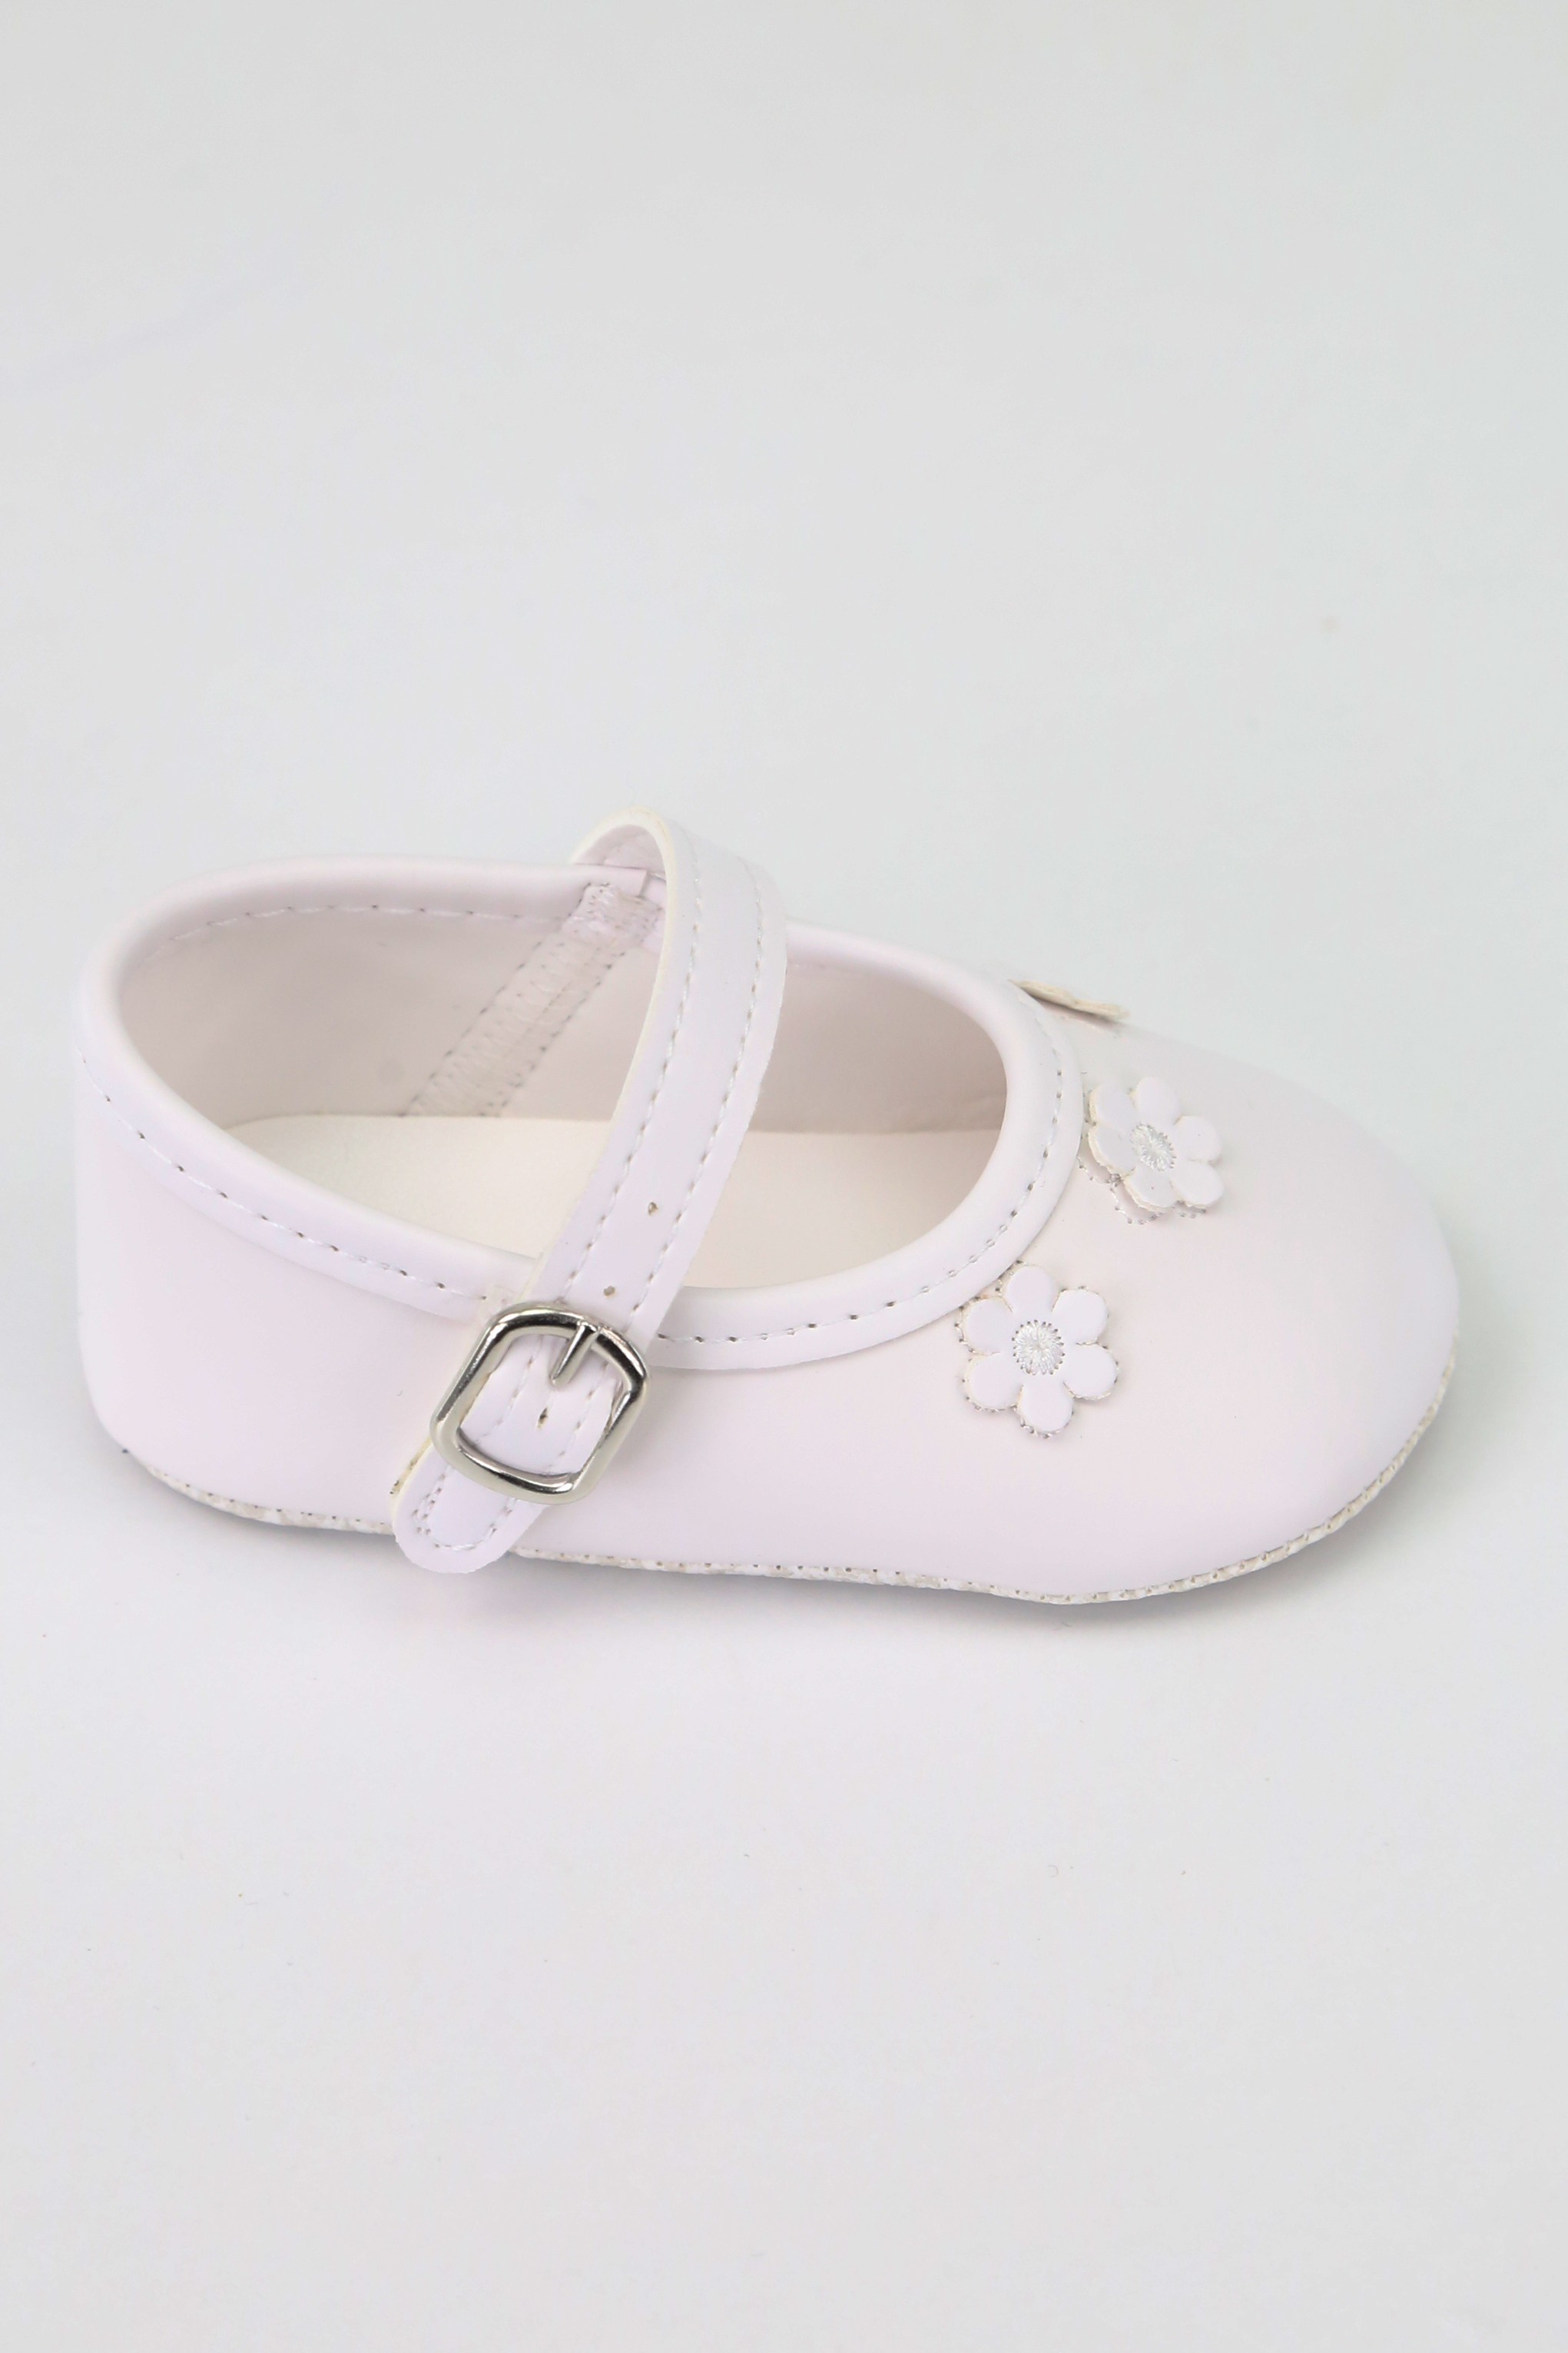 Çiçek Desenli Kız Bebek Yumuşak Taban Ayakkabı, 16-18 Numara - Beyaz